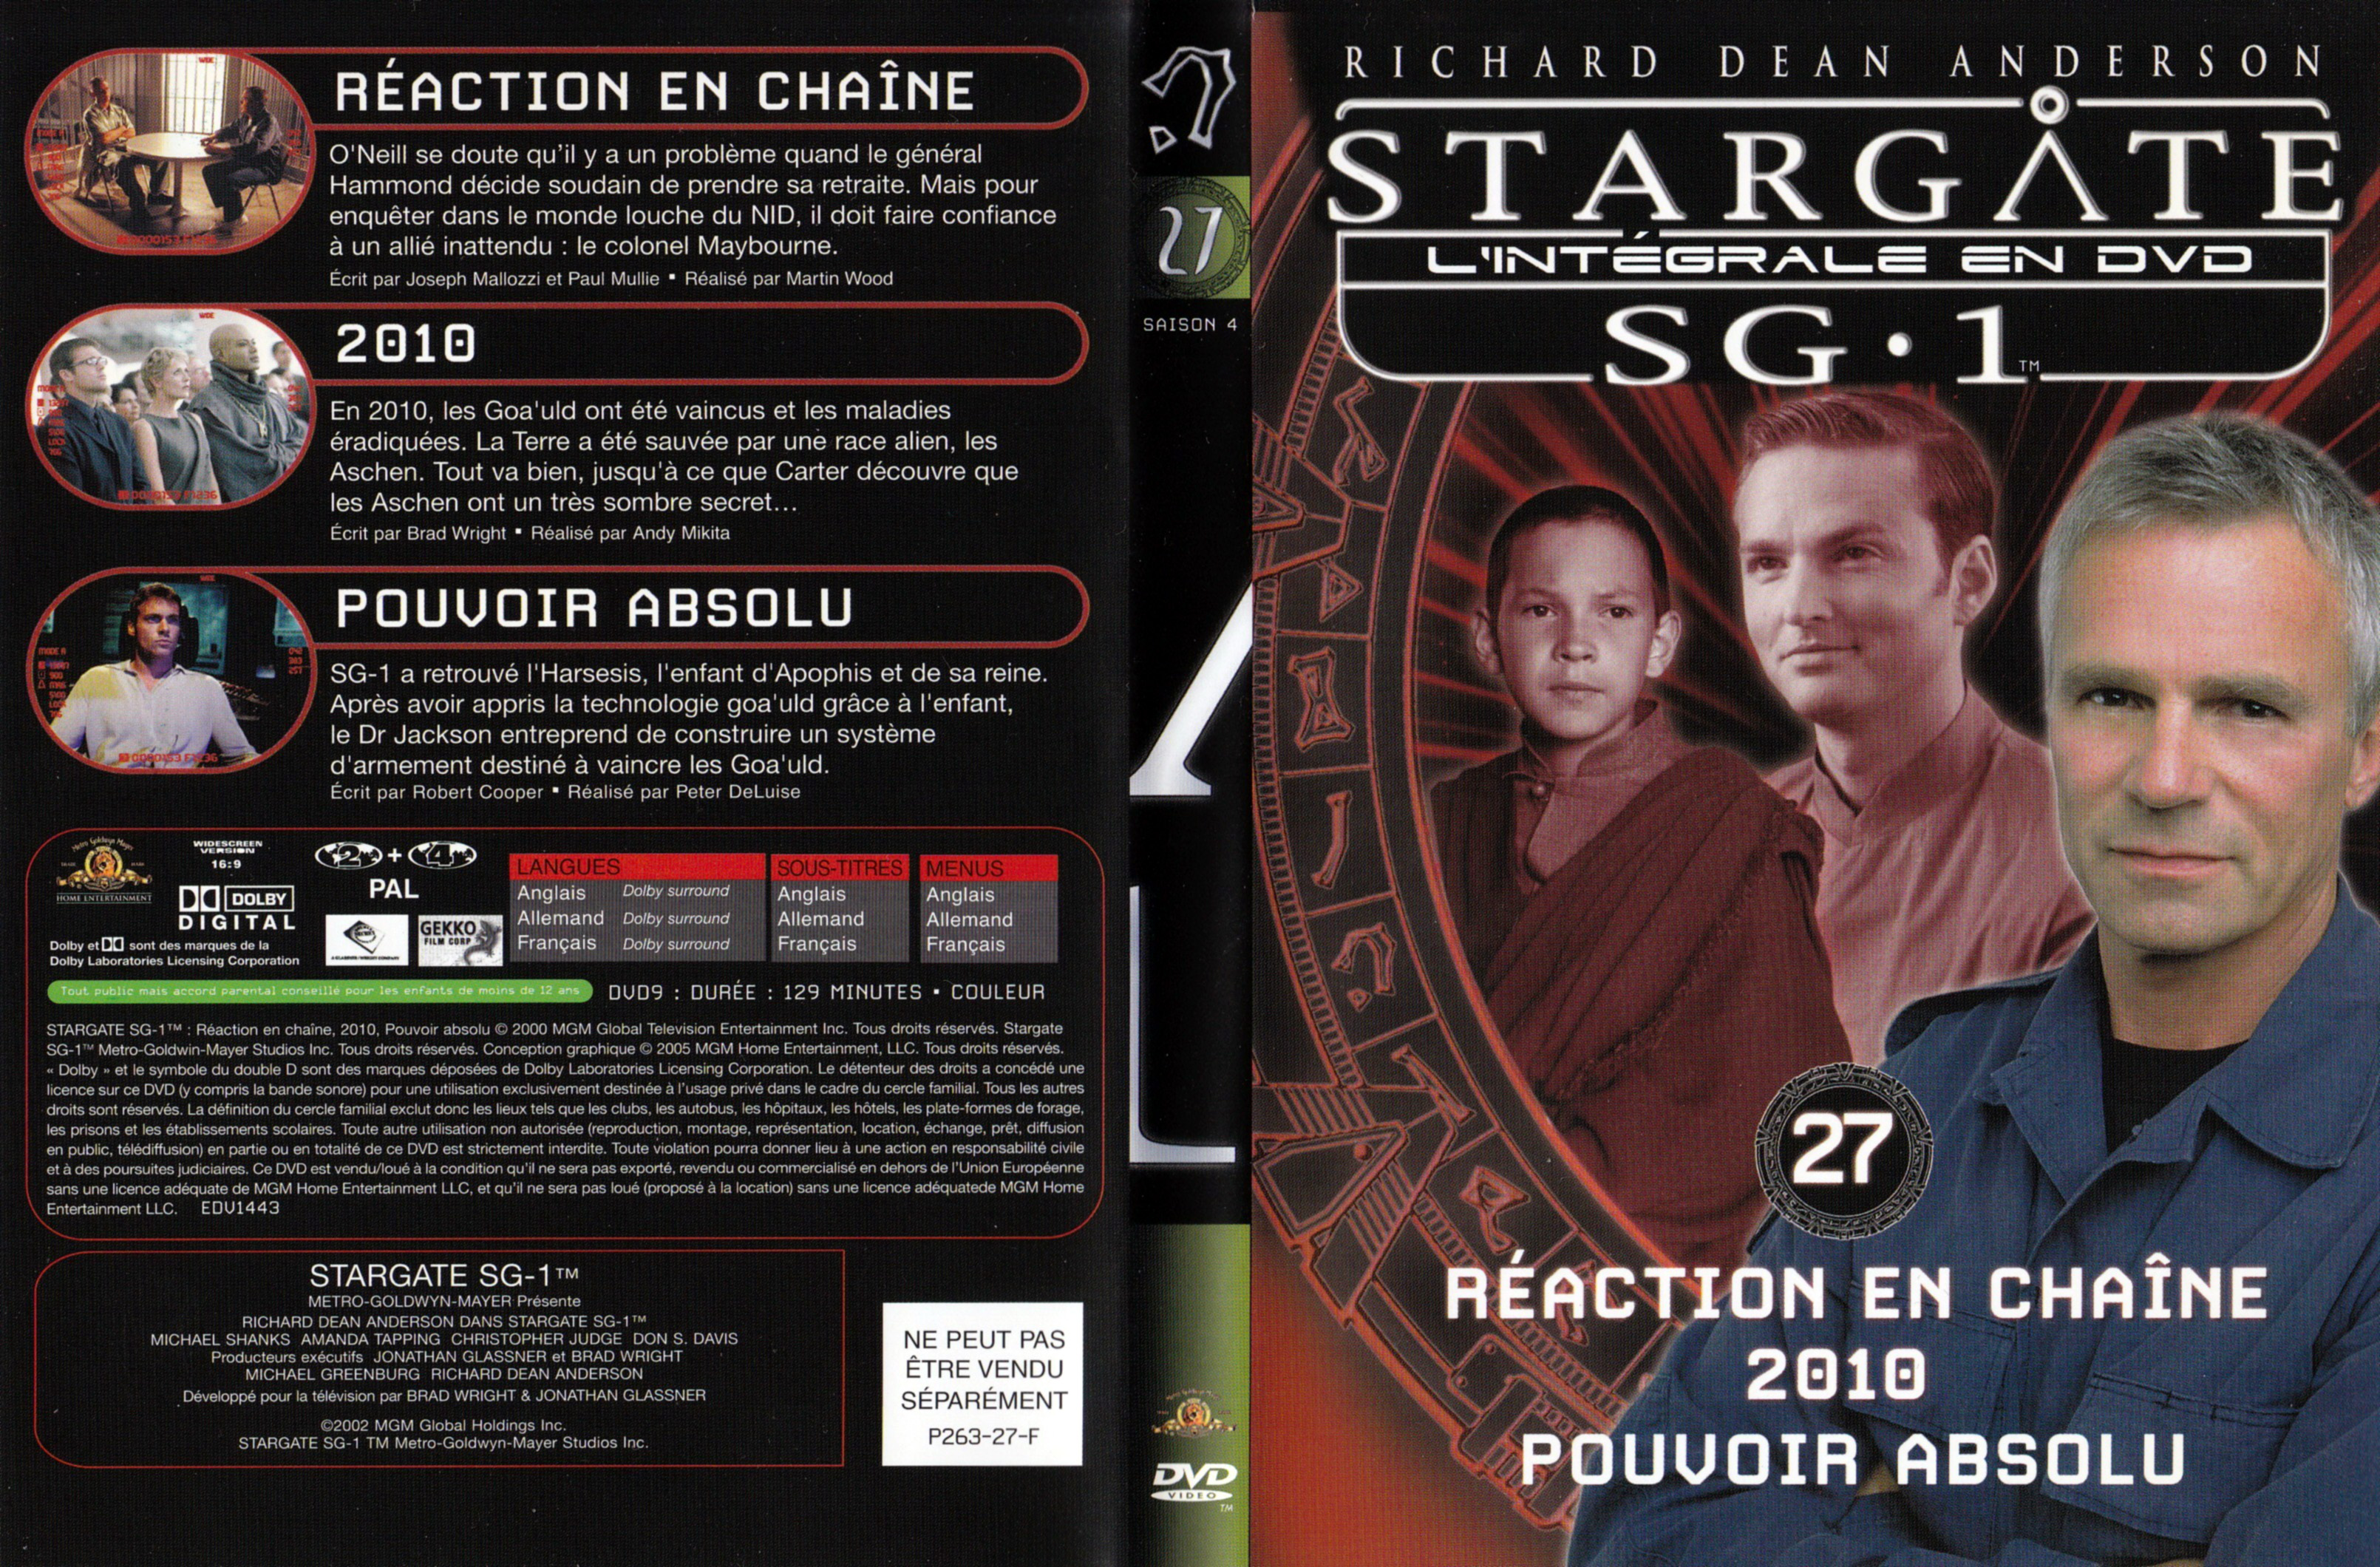 Jaquette DVD Stargate SG1 Intgrale Saison 4 vol 27